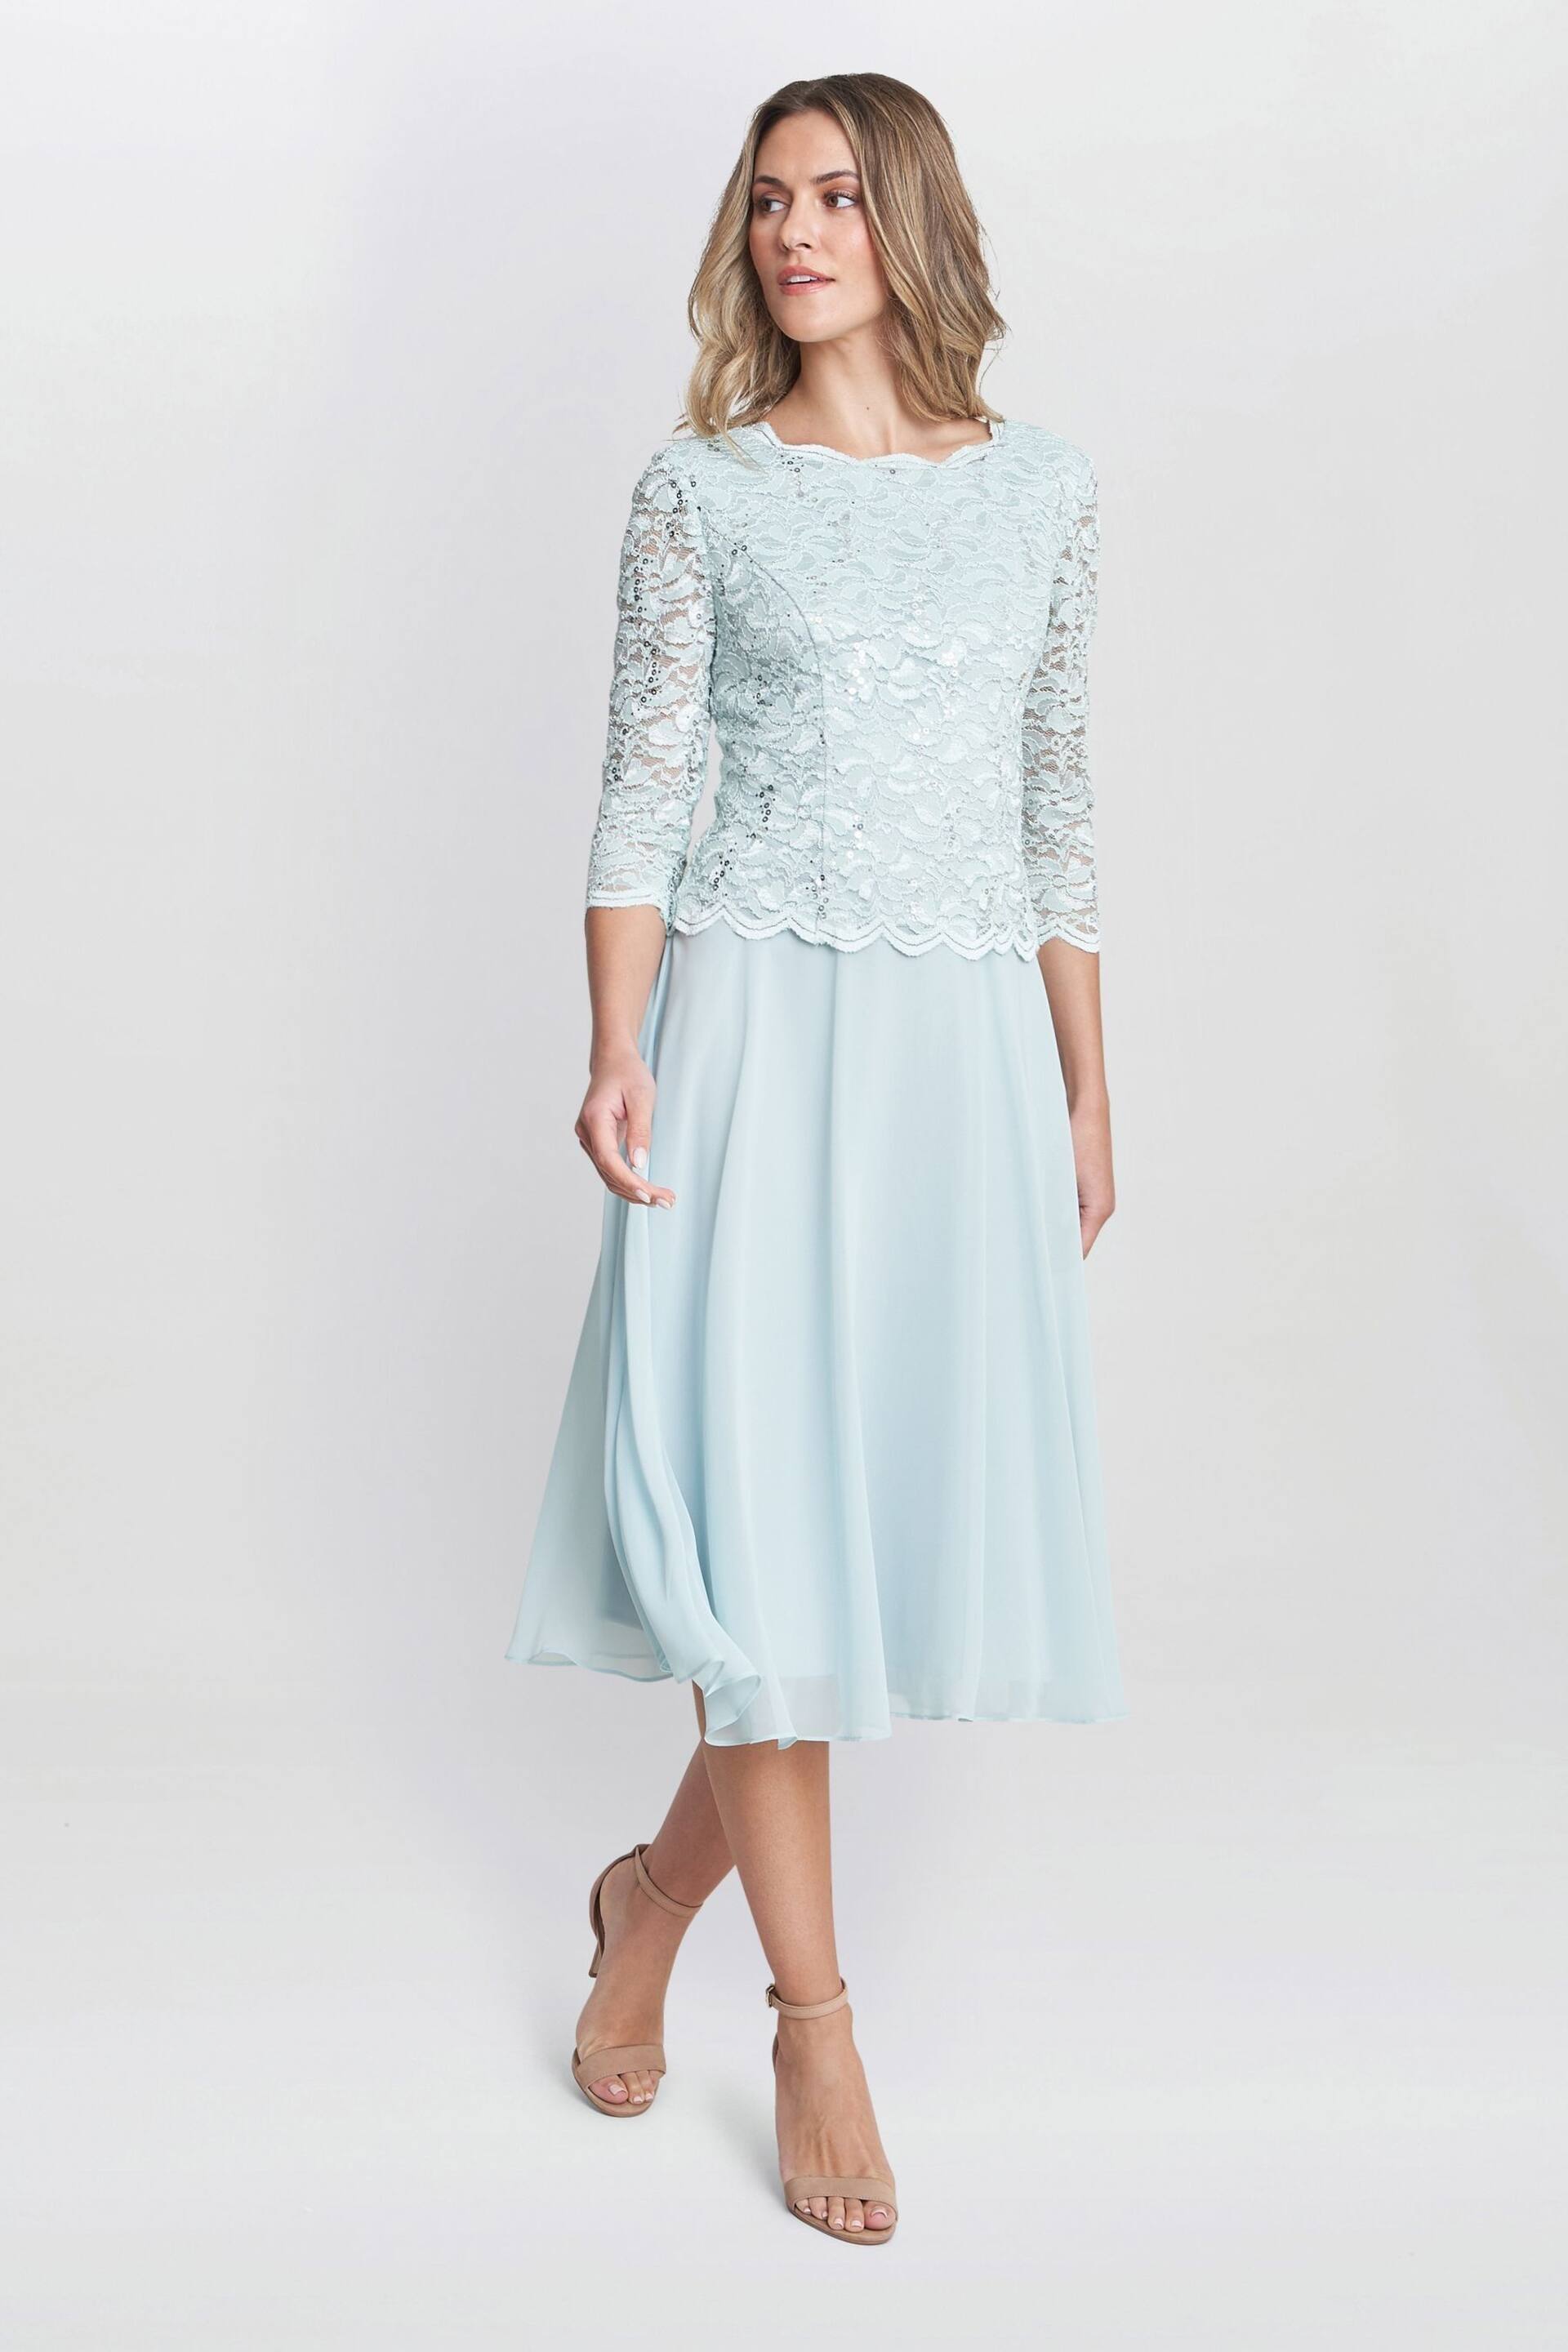 Gina Bacconi Rona Midi Dress With Lace Bodice & Chiffon Skirt - Image 5 of 6